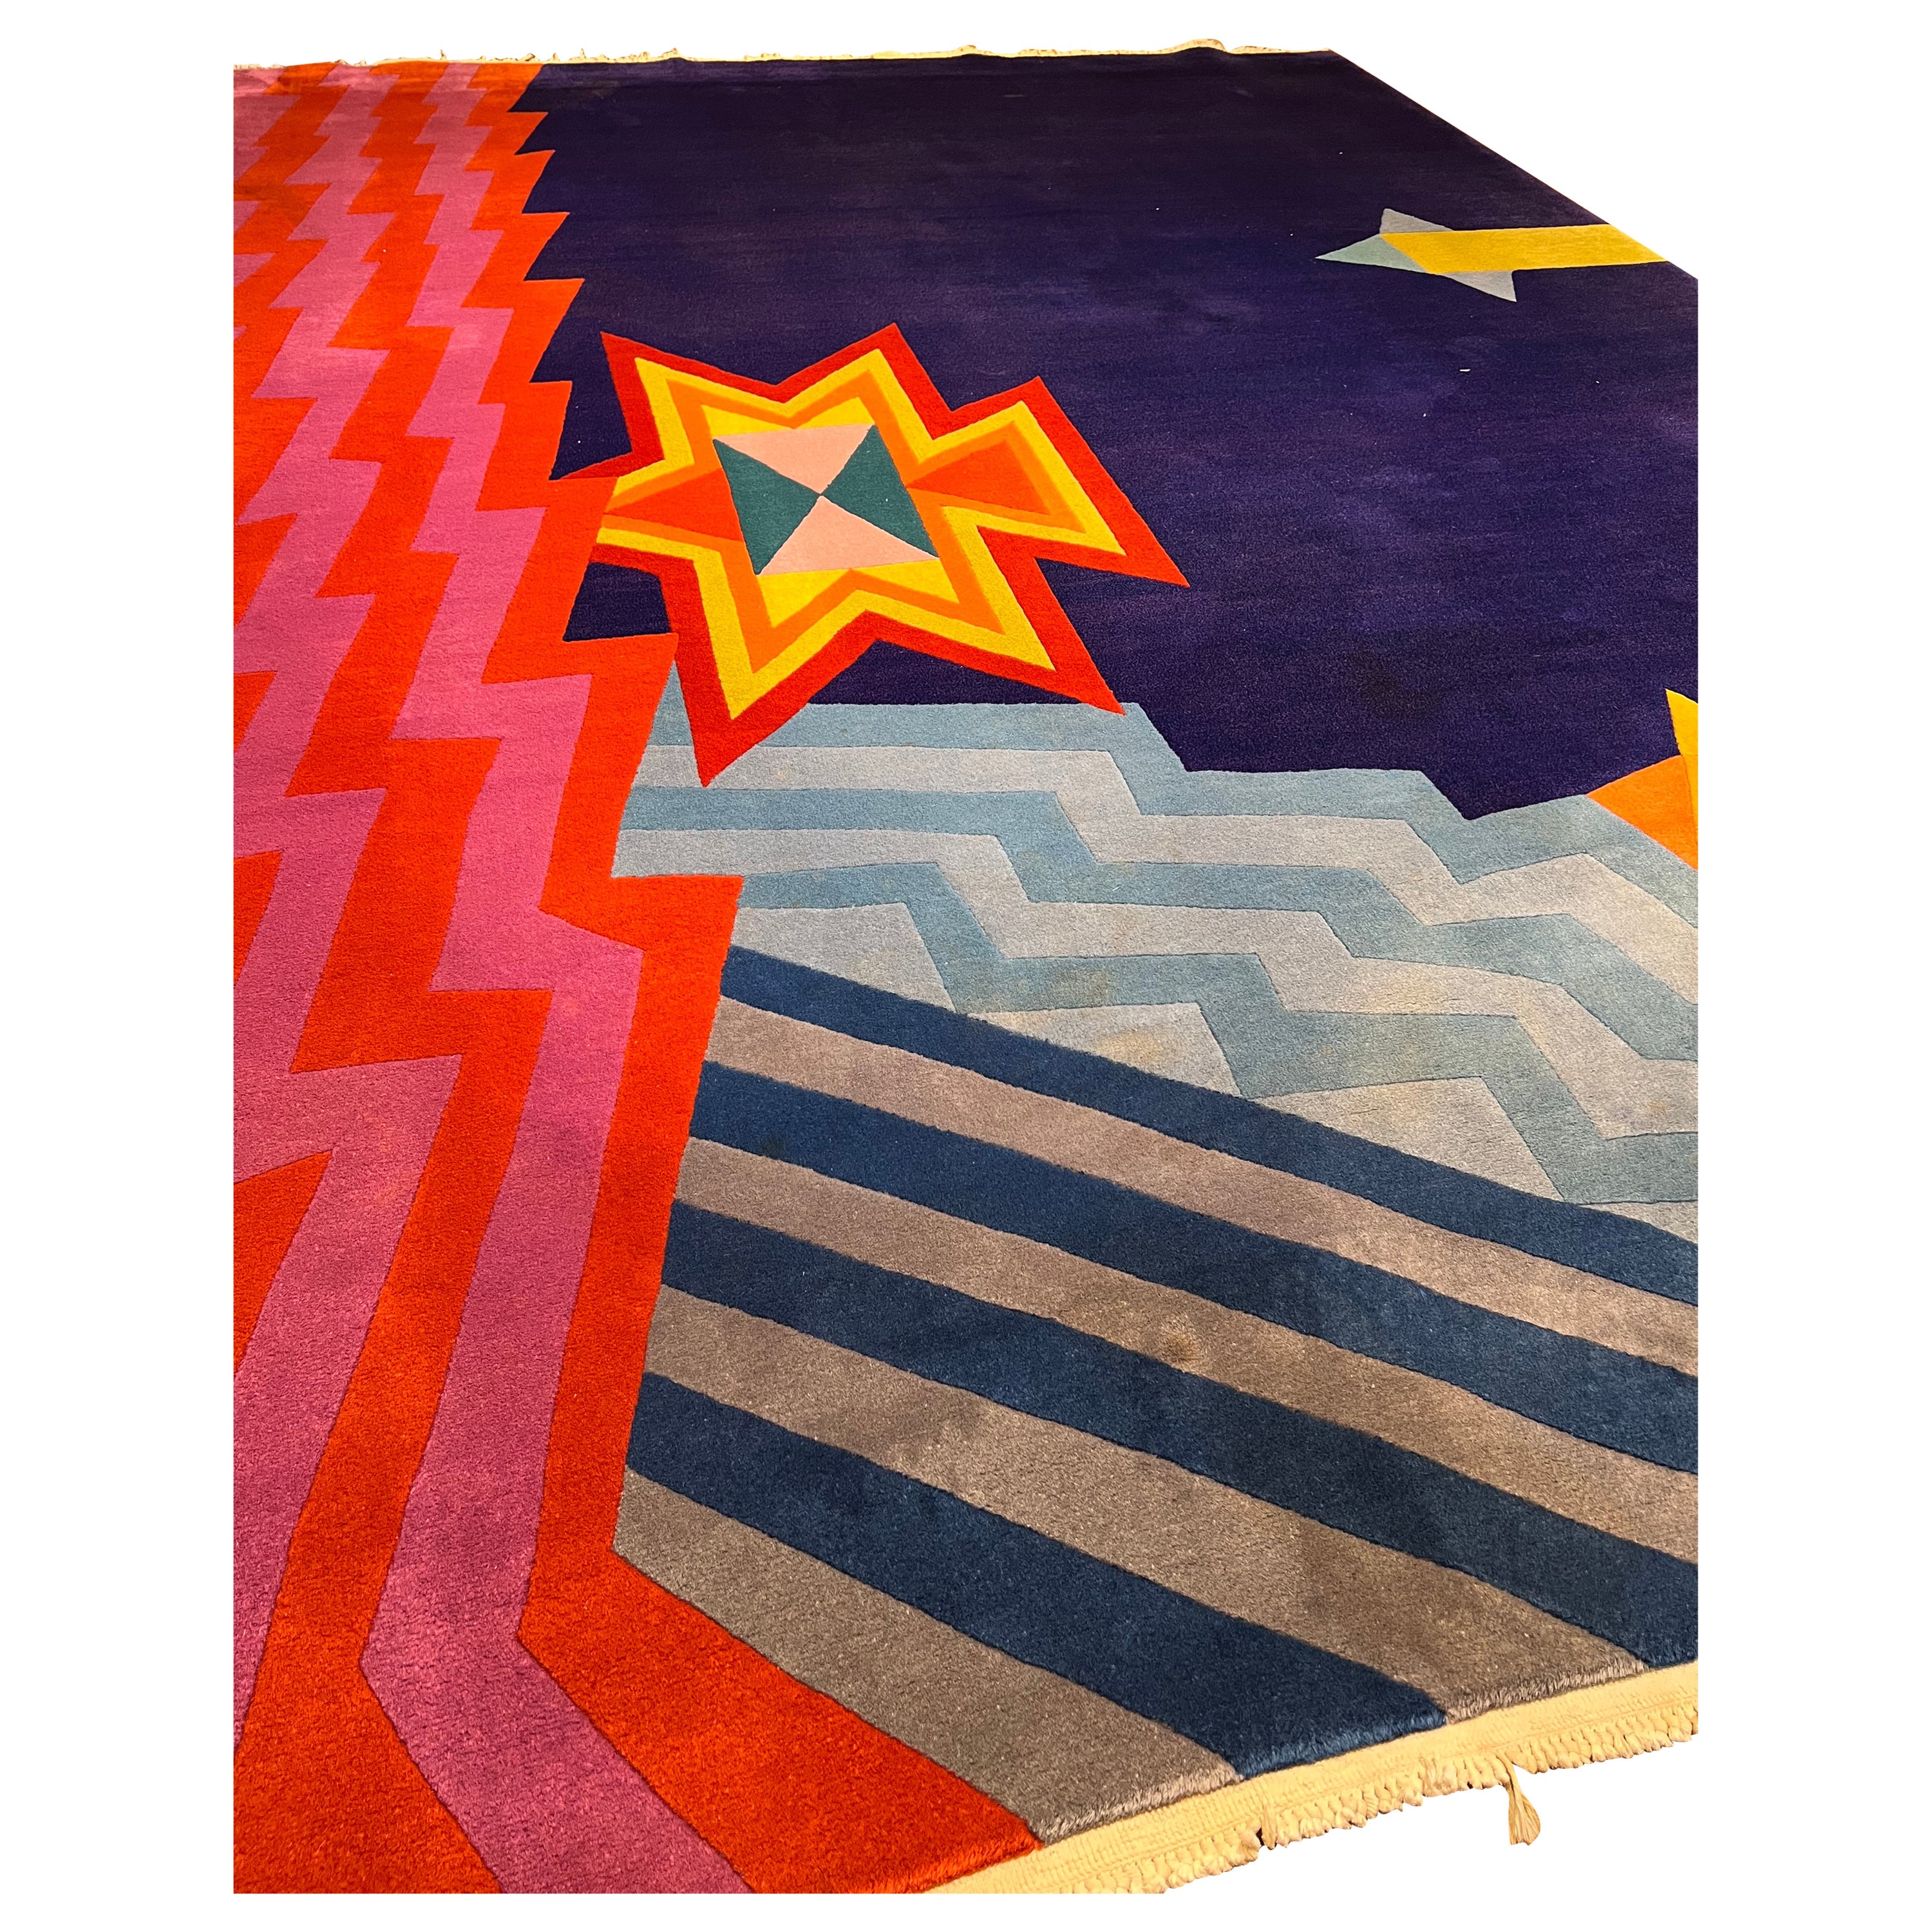 Handgeknüpfter Teppich mit Garn aus reiner Wolle auf Baumwollkette. Knotenpunktdichte: 90.000 pro Quadratmeter. Handgefertigt mit gekerbter Schabung. Entworfen und realisiert im Jahr 1989.
Limitierte Auflage von 5 Stück. 
Das Atelier von Elio